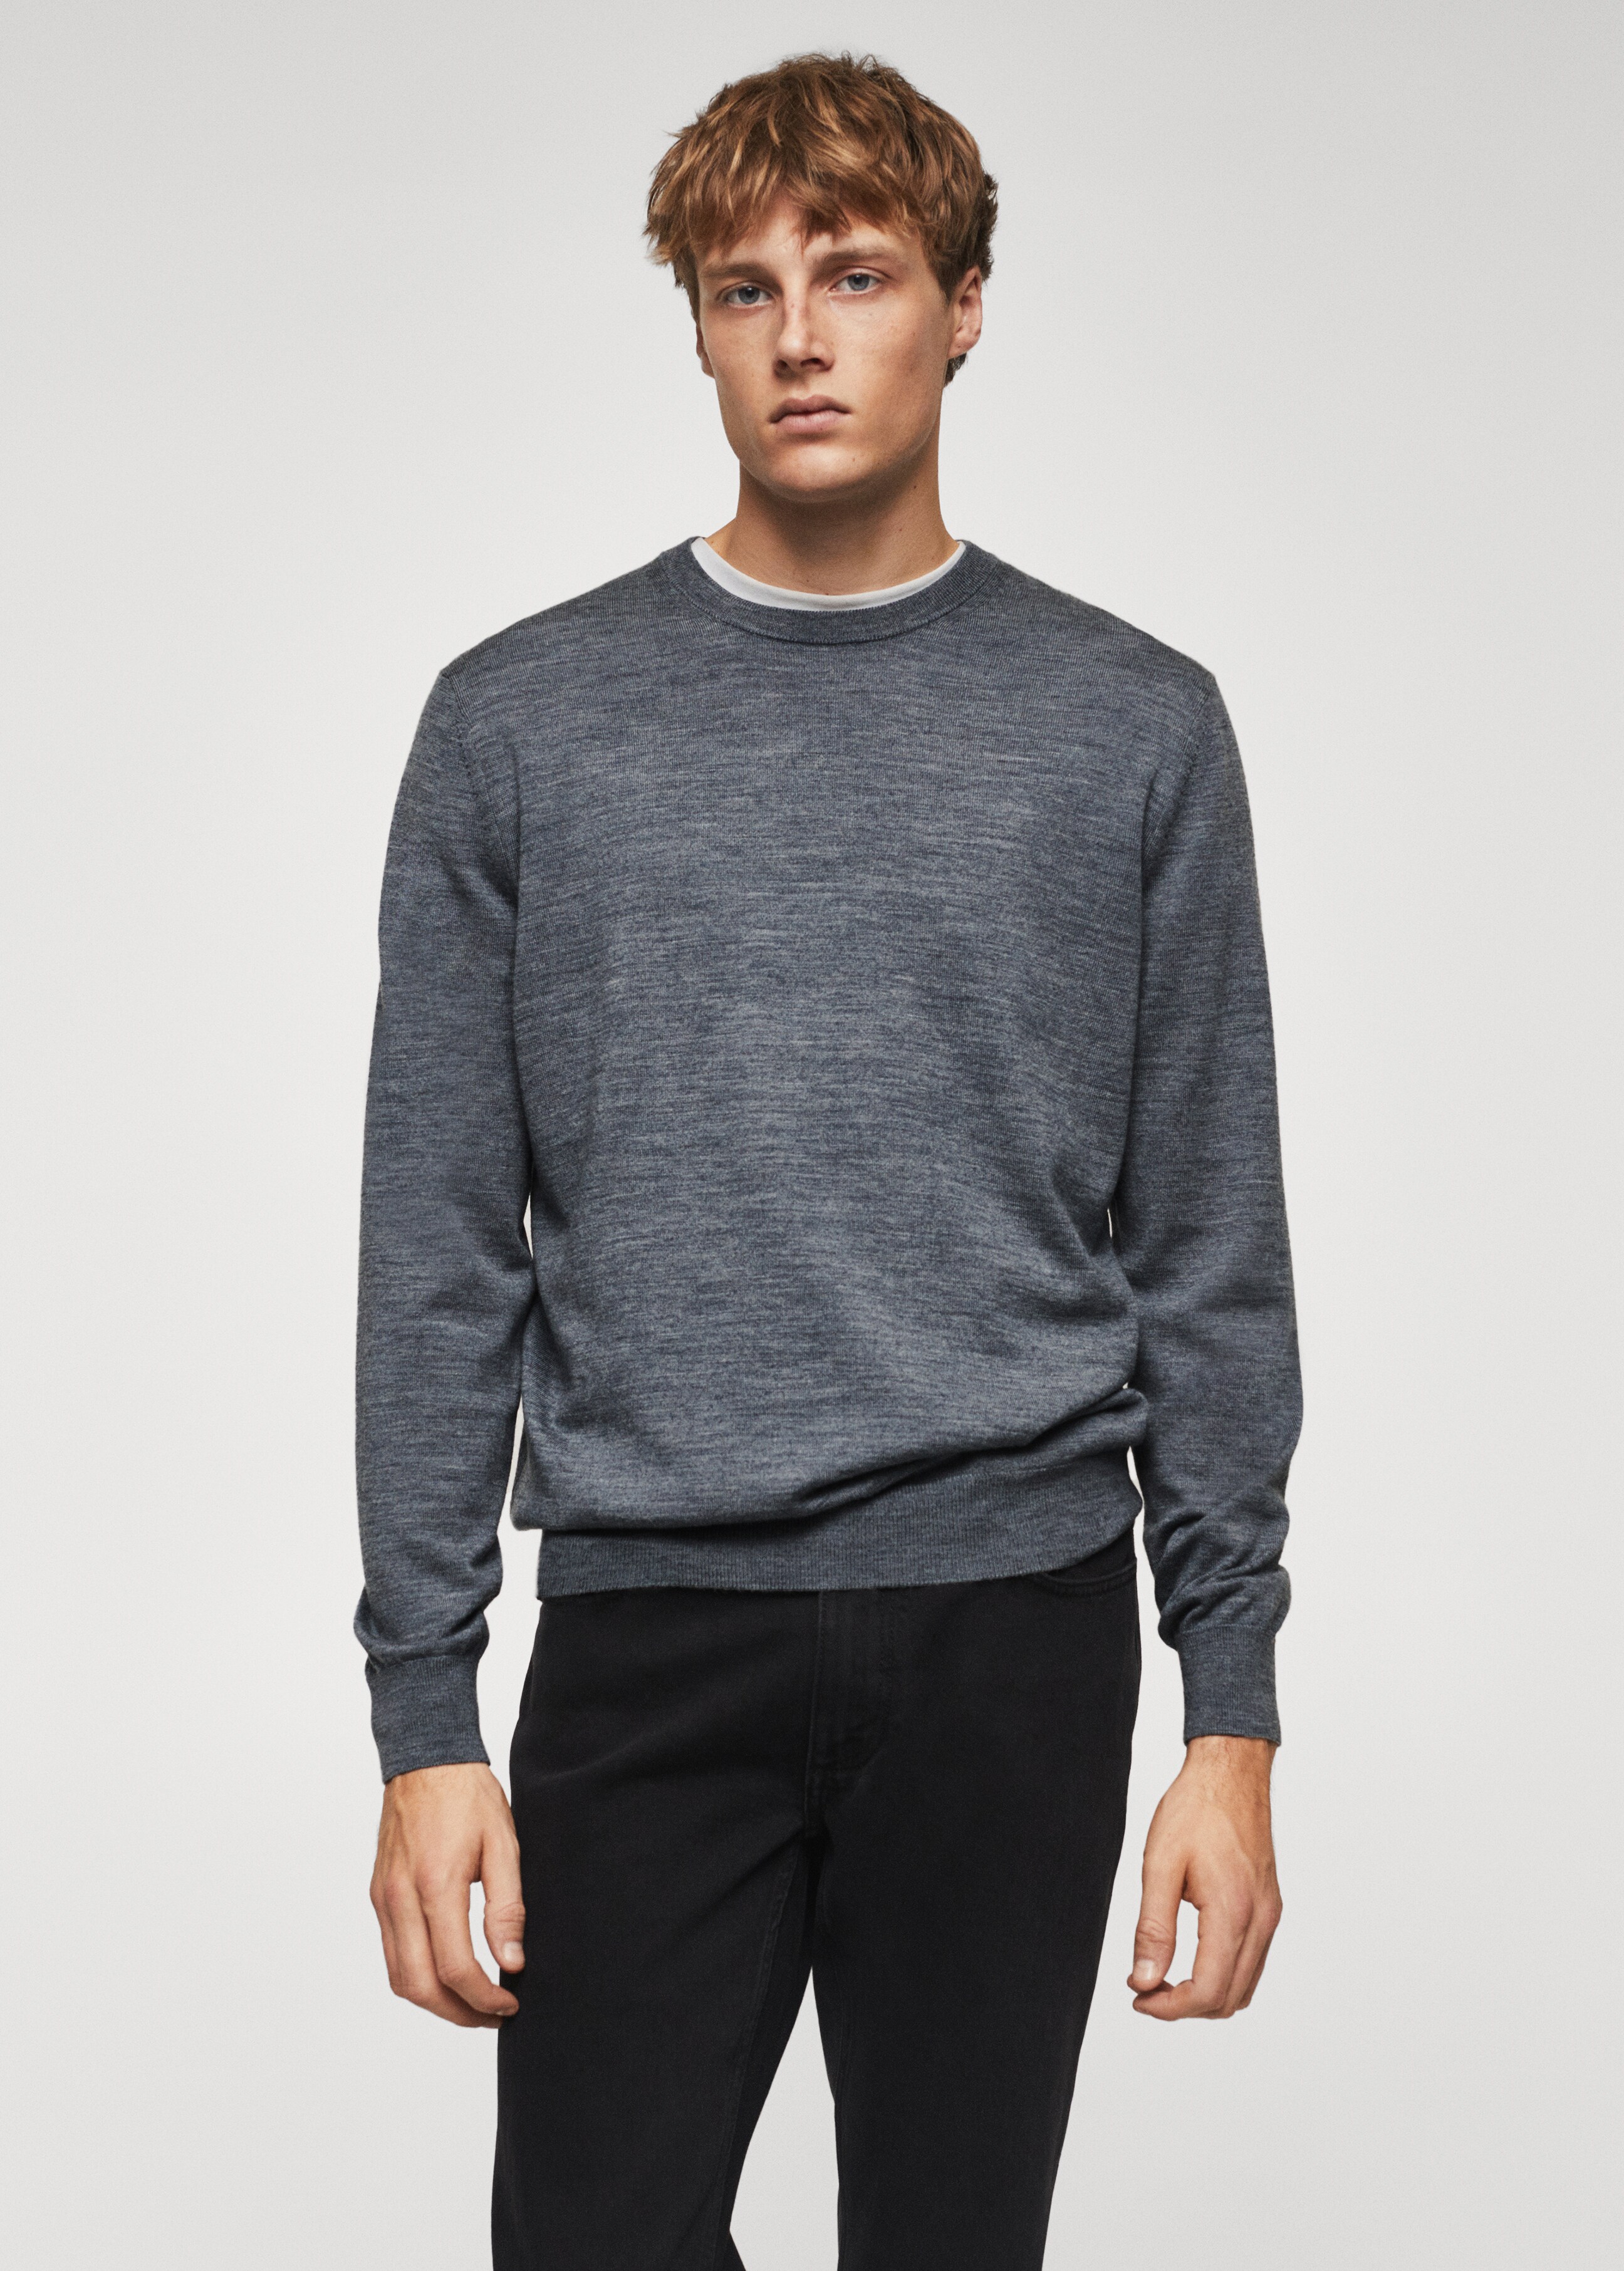 Merino wool washable sweater - Medium plane